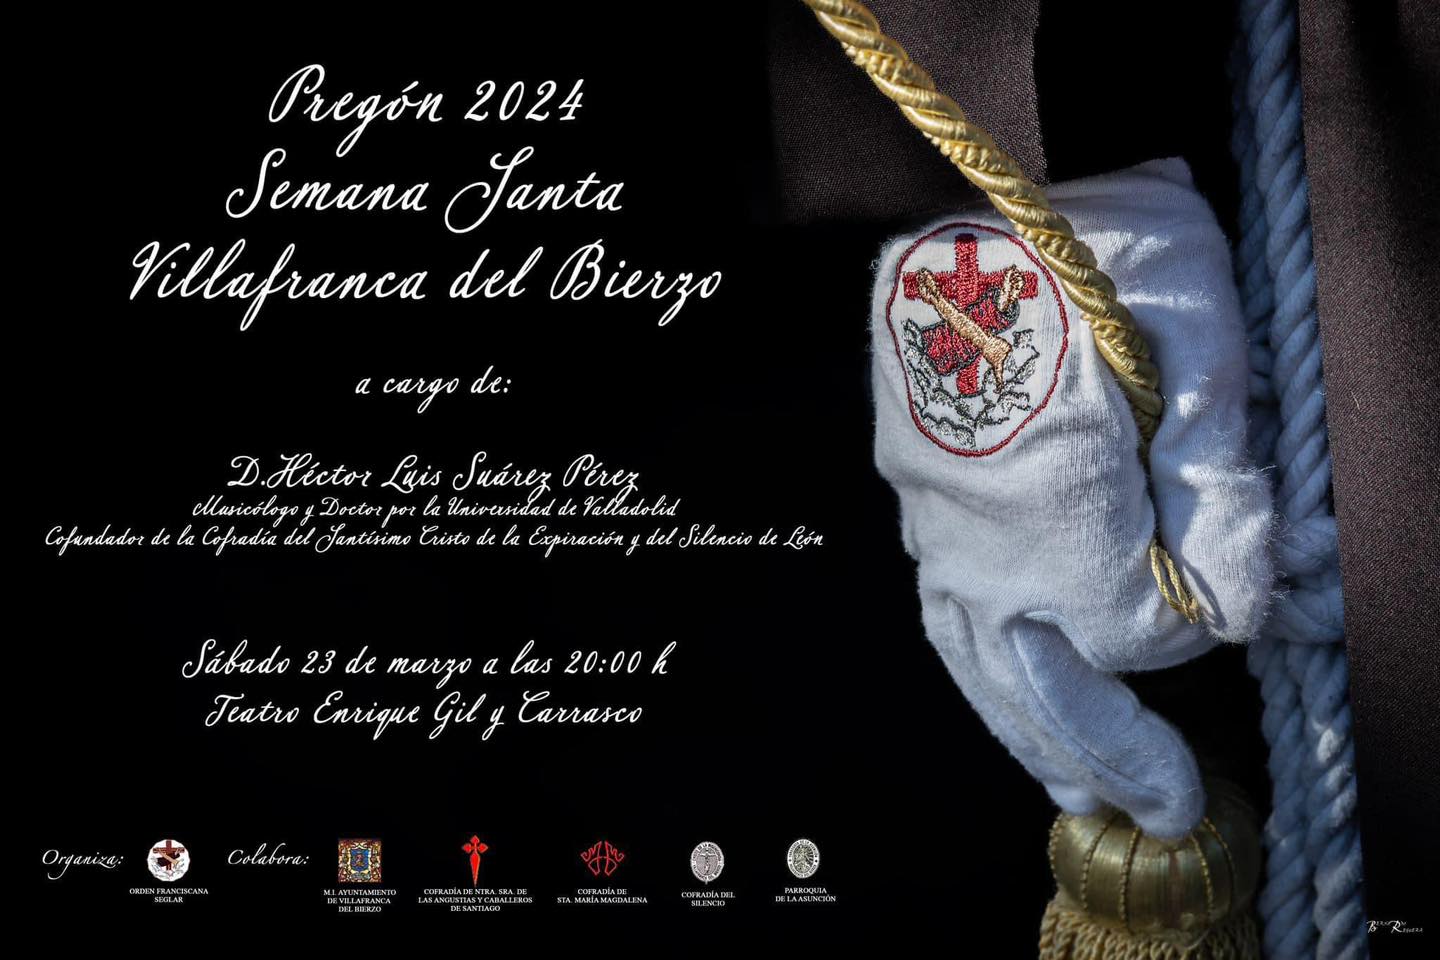 Semana Santa de Villafranca del Bierzo. Este es el programa organizado del 23 al 31 de marzo 3